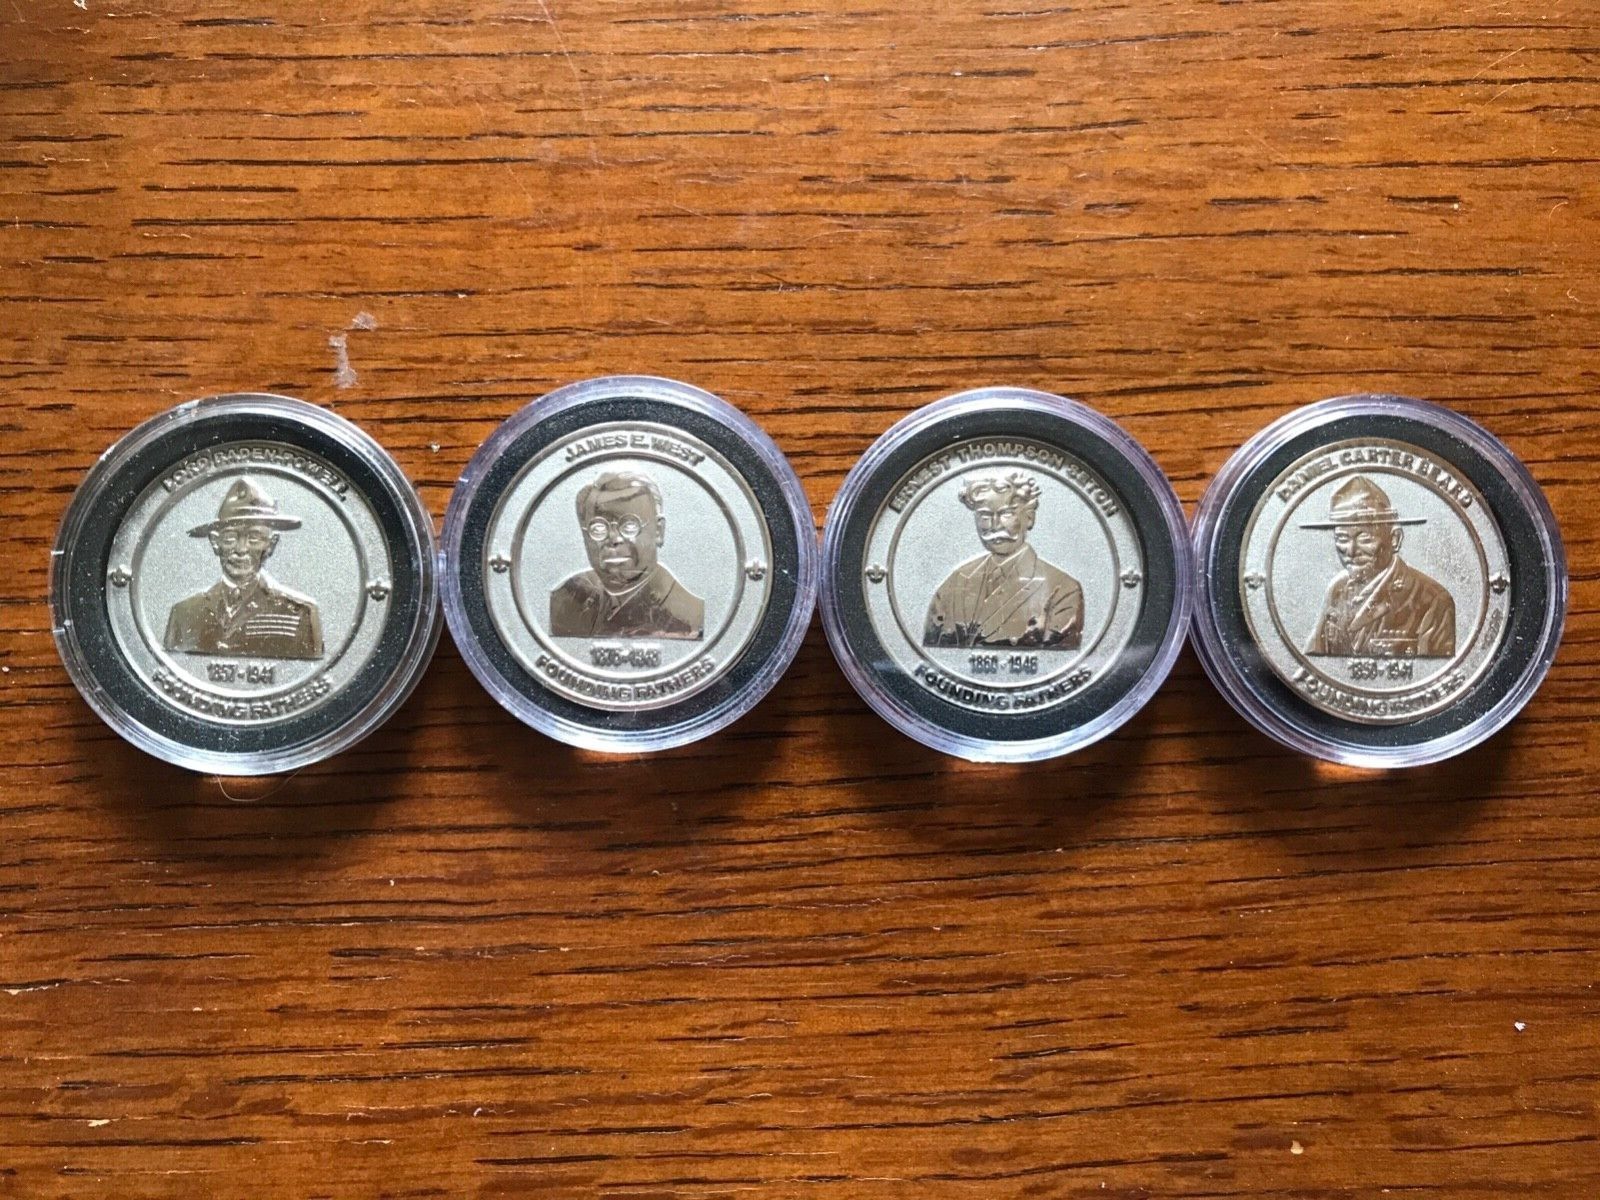 Boy Scouts BSA Founding Fathers Coins Complete Set - Longs Peak Council Mint